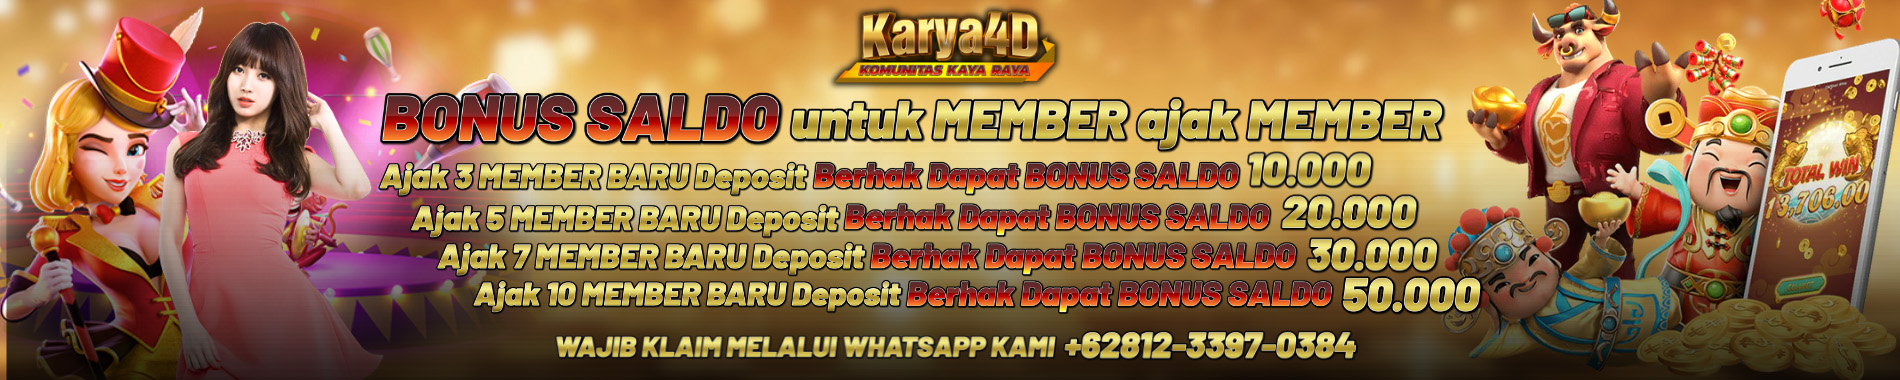 Karya4D: Member Get Member